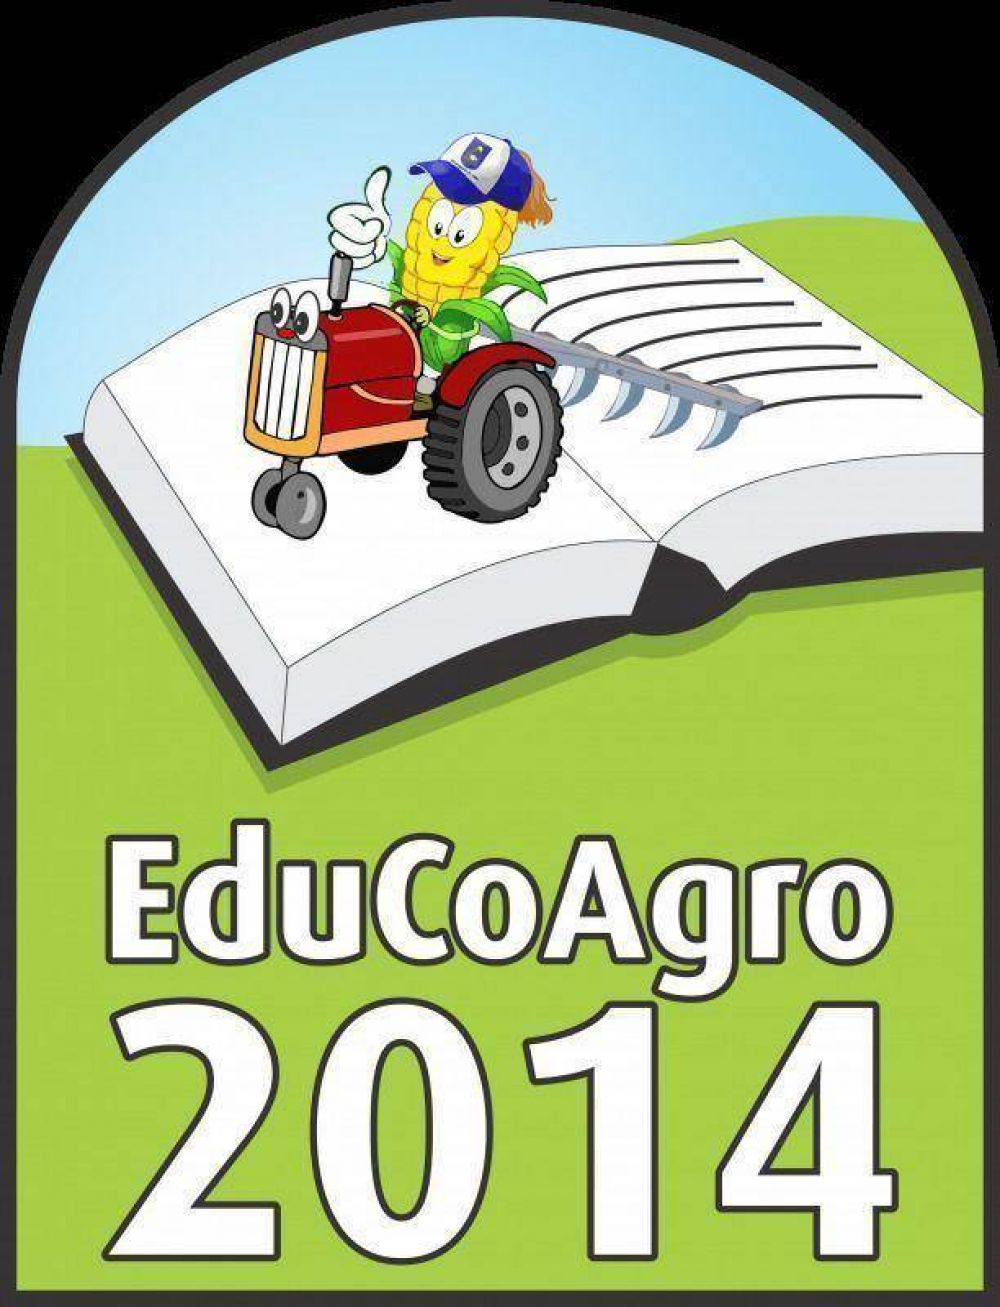 La EduCoAgro 2015 se realizar del 11 al 13 de setiembre